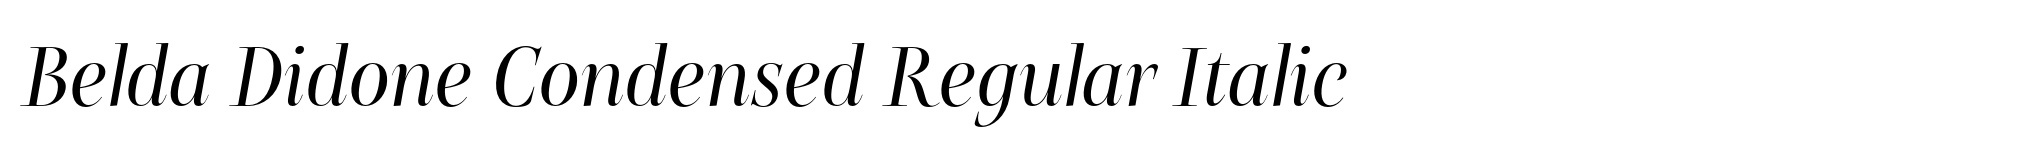 Belda Didone Condensed Regular Italic image